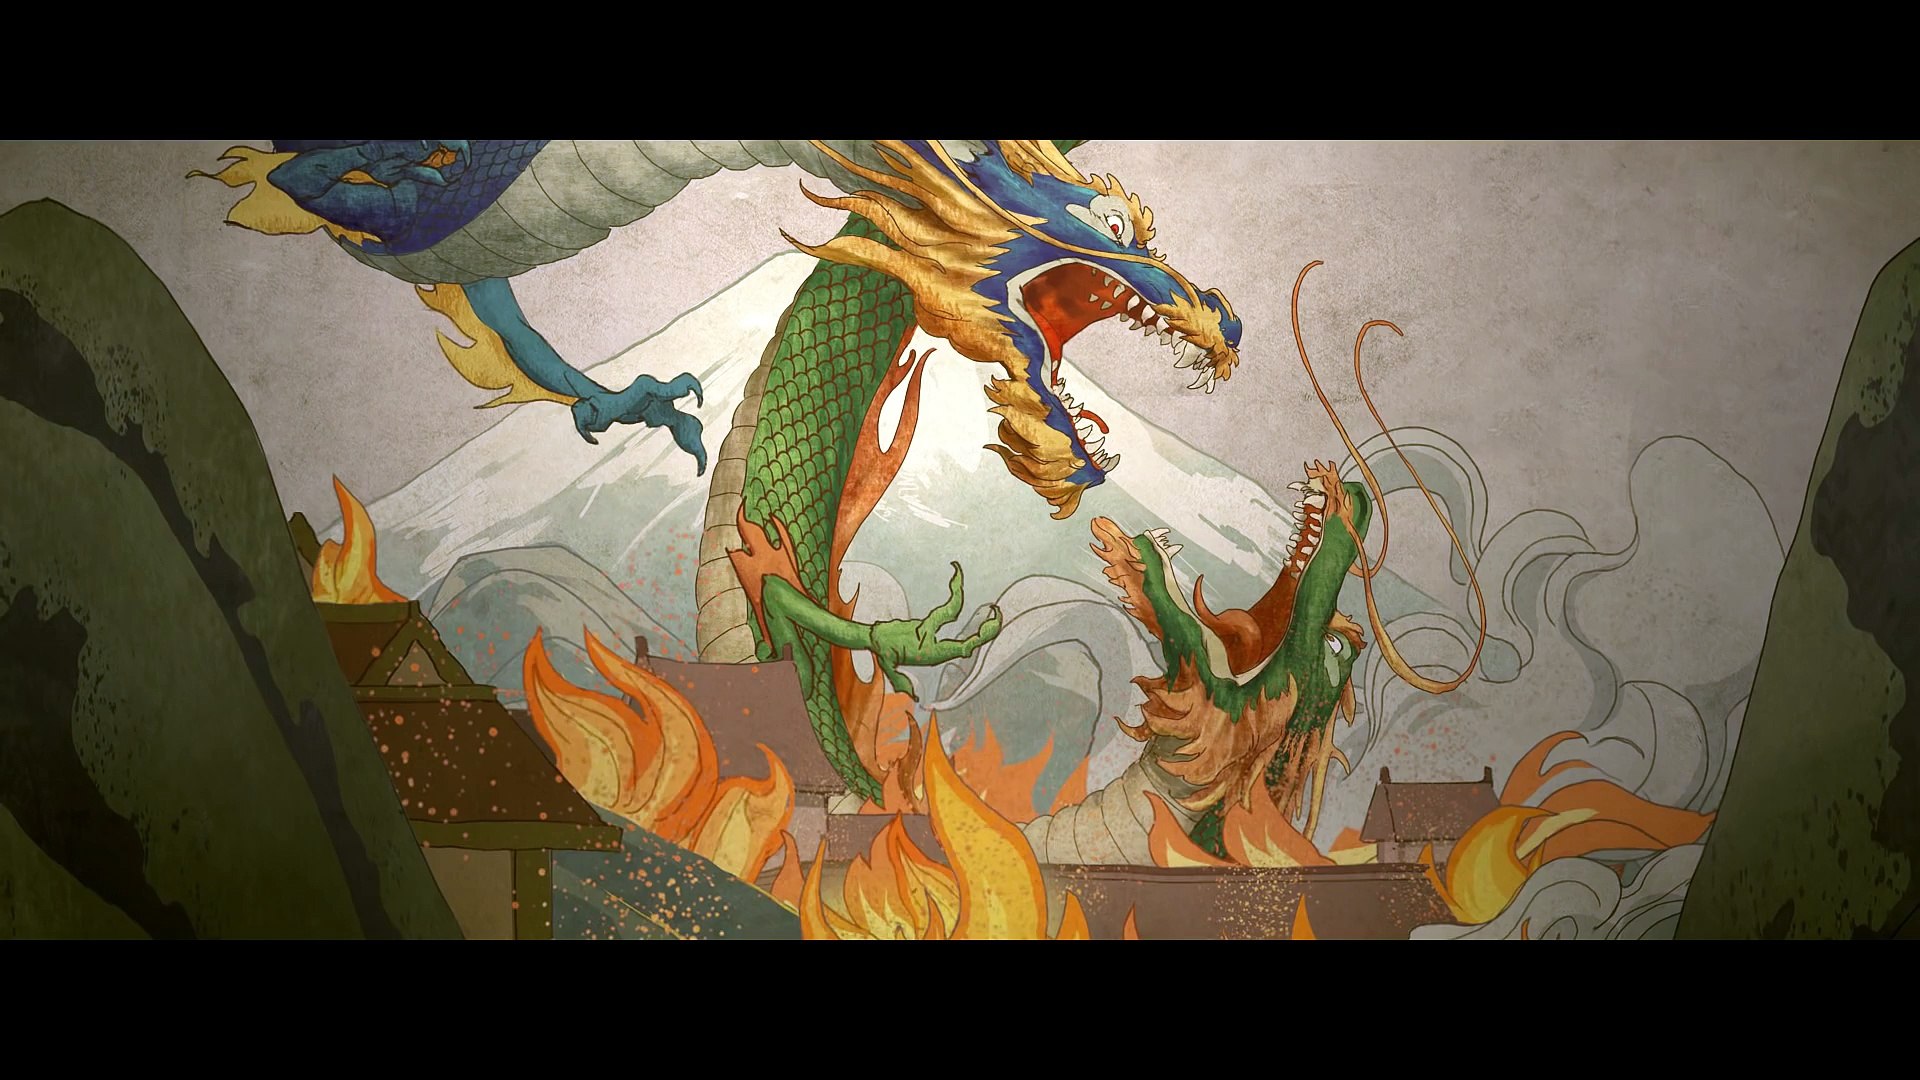 Dragones - Cuarto corto animado de Overwatch en español - Vídeo Dailymotion